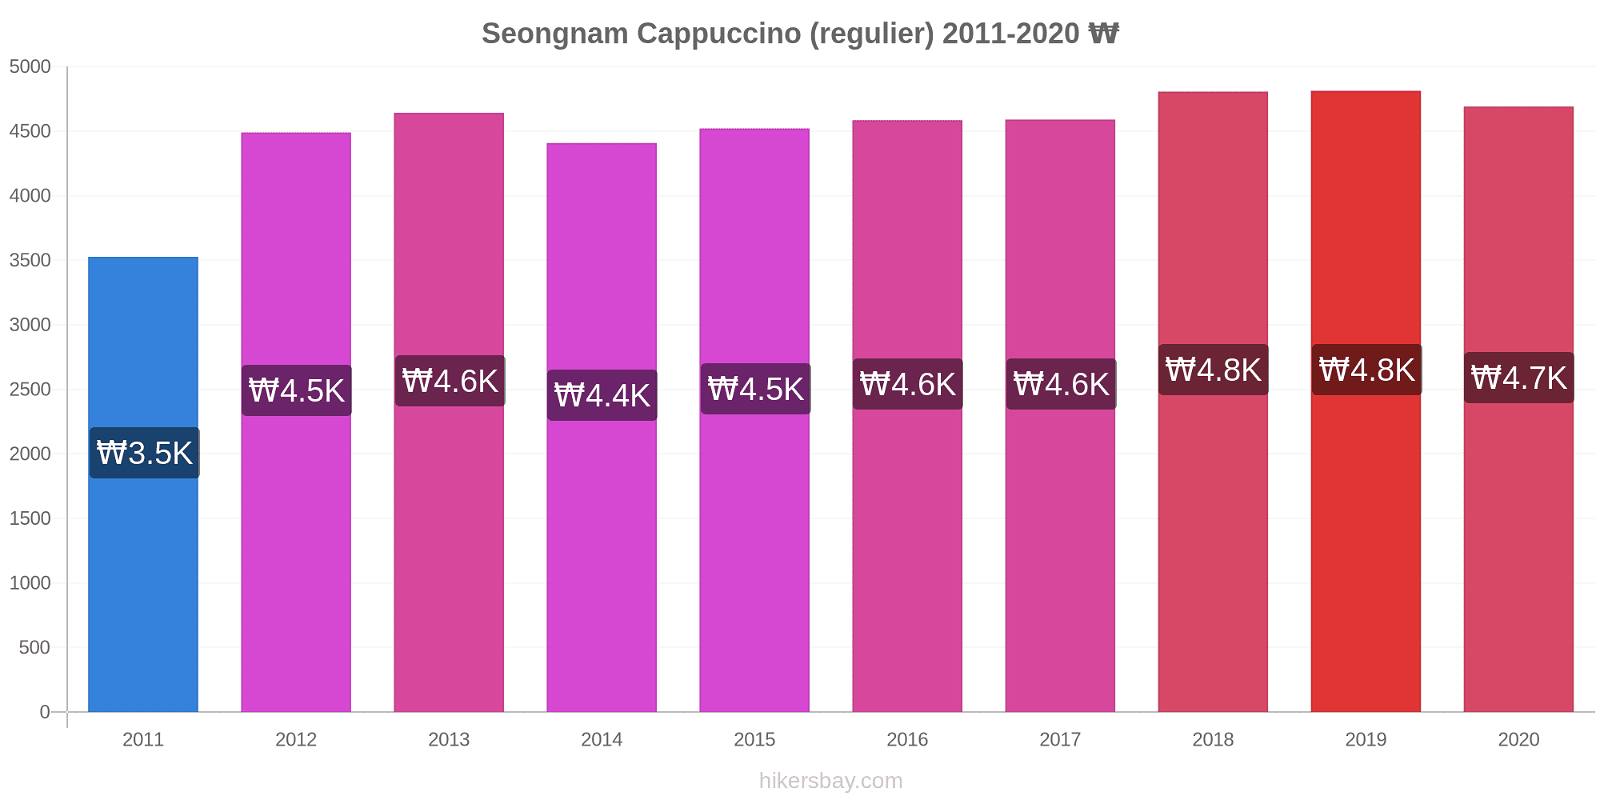 Seongnam prijswijzigingen Cappuccino (regelmatige) hikersbay.com